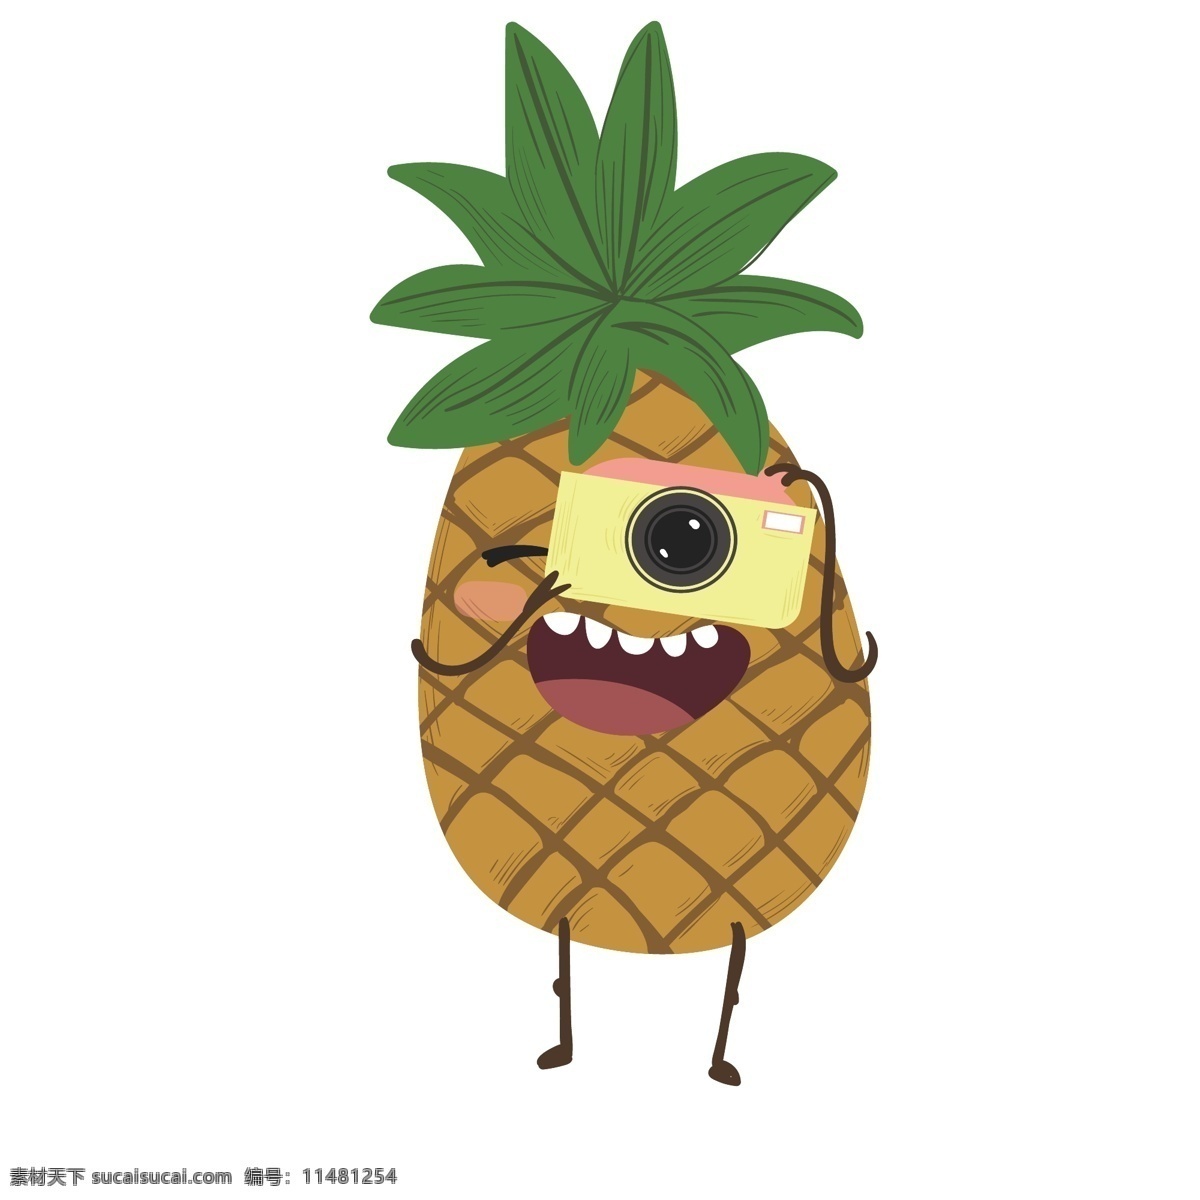 夏天 卡通 菠萝 清凉 矢量图 暖色调 夏日清凉 卡通菠萝 扁平化图案 卡通水果 无限 放大 不 模糊